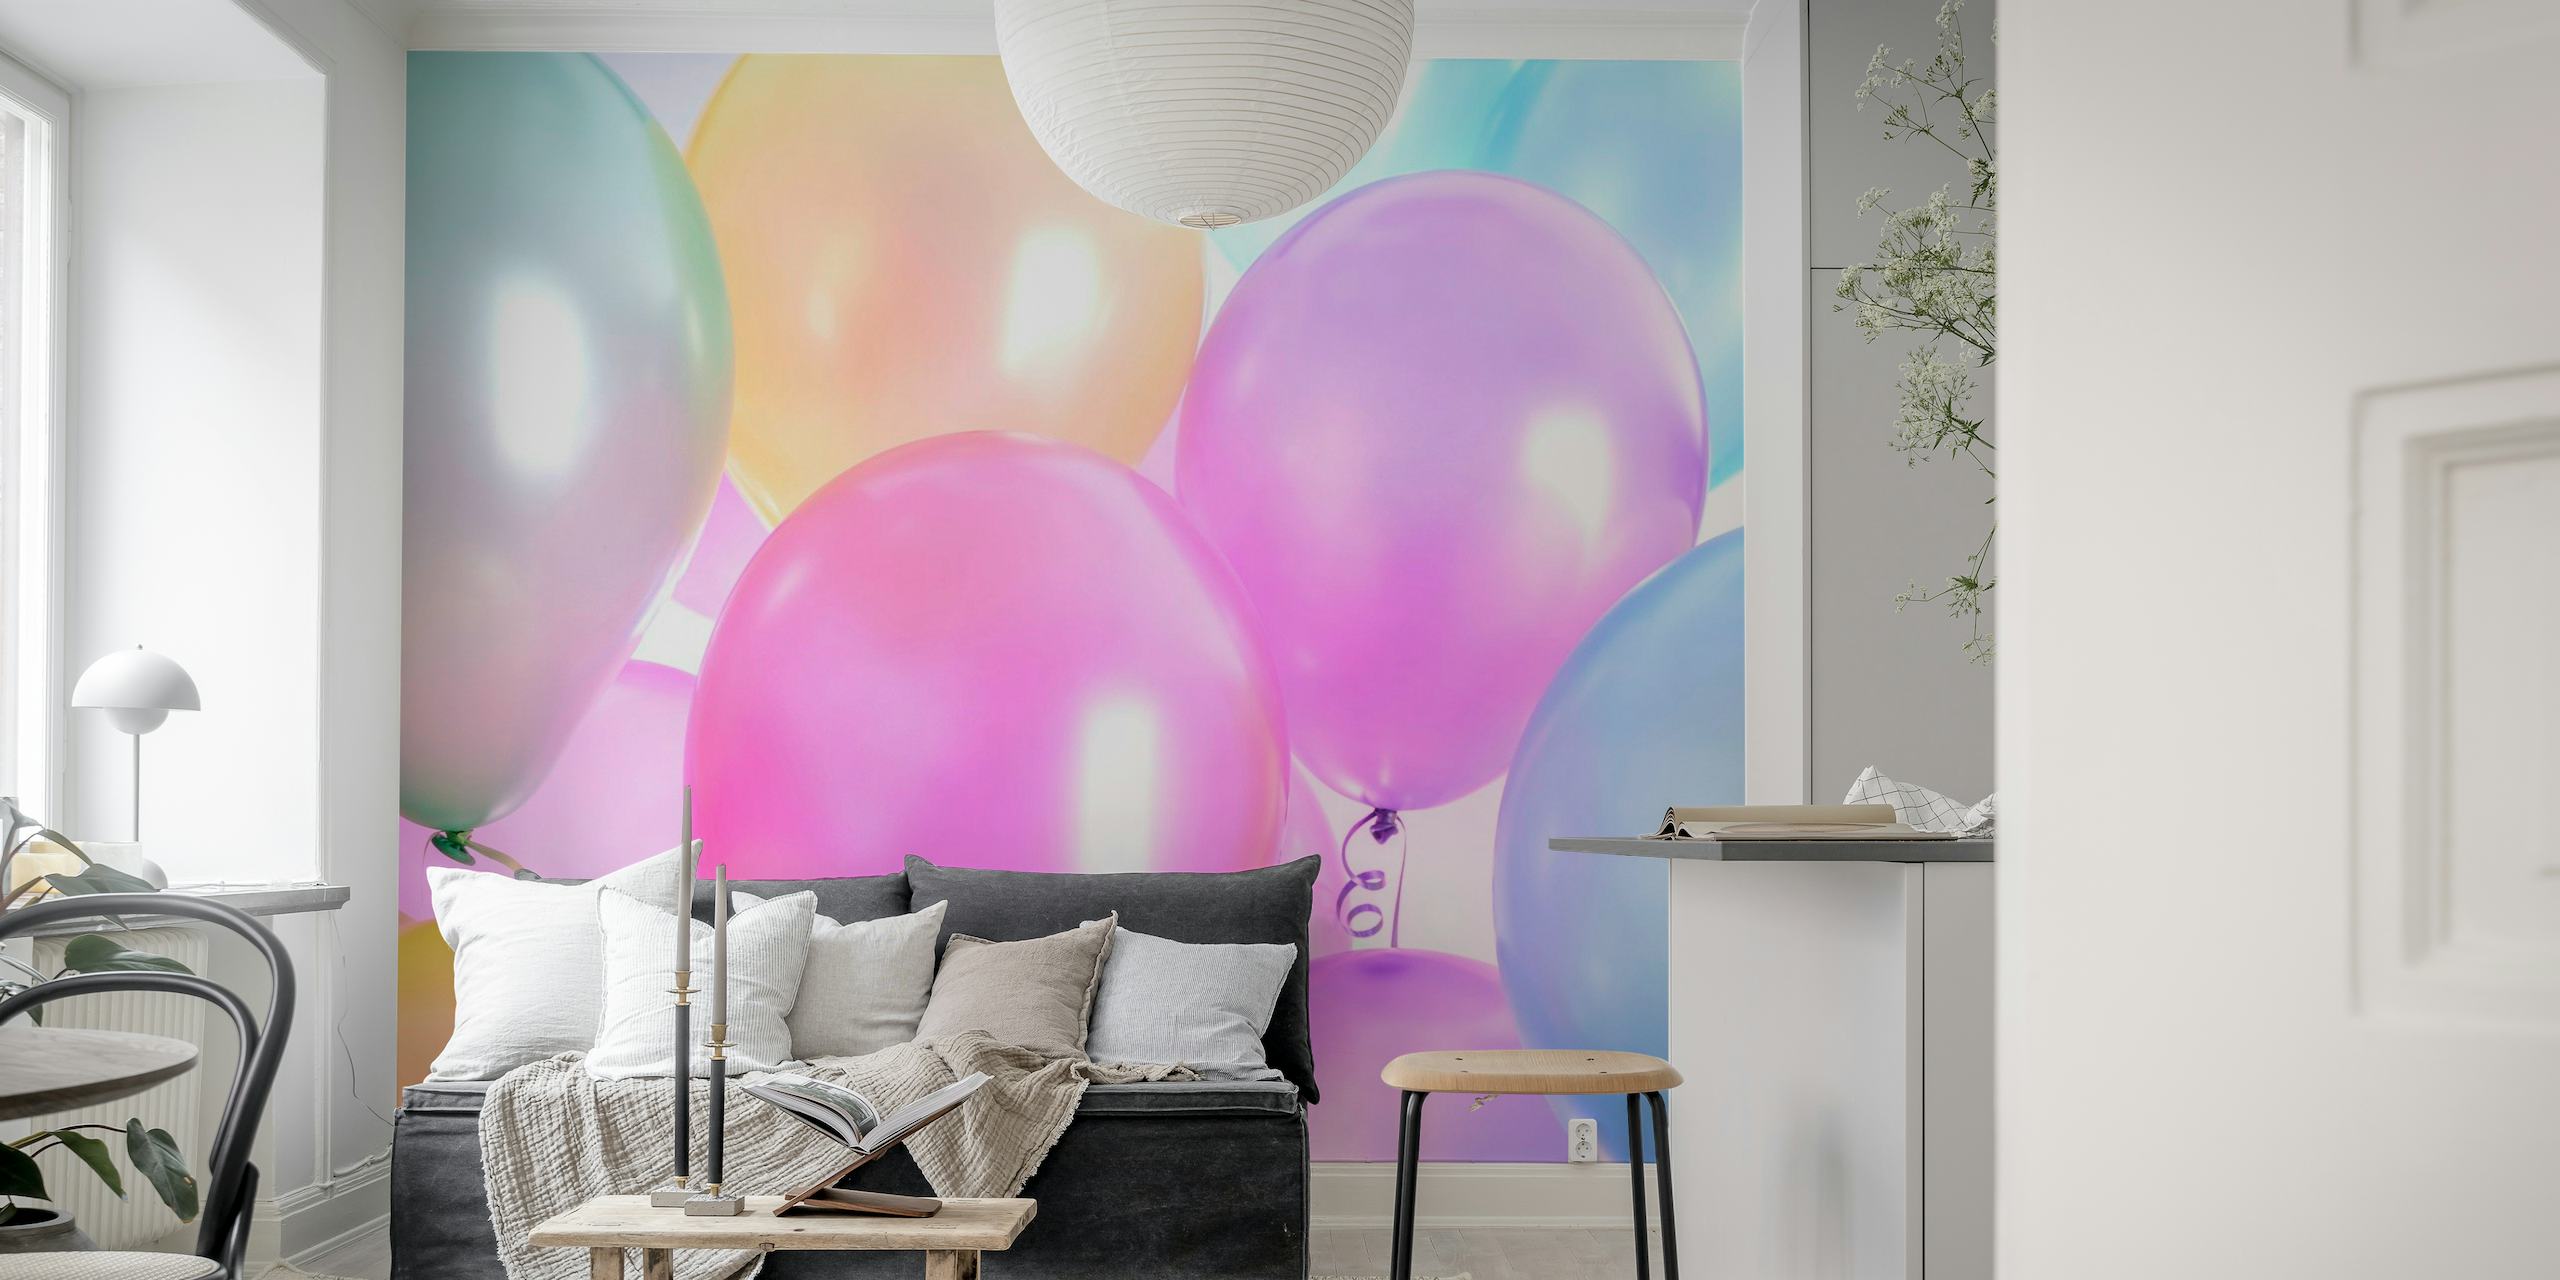 Mural de parede de balões variados em cores pastéis no Happywall